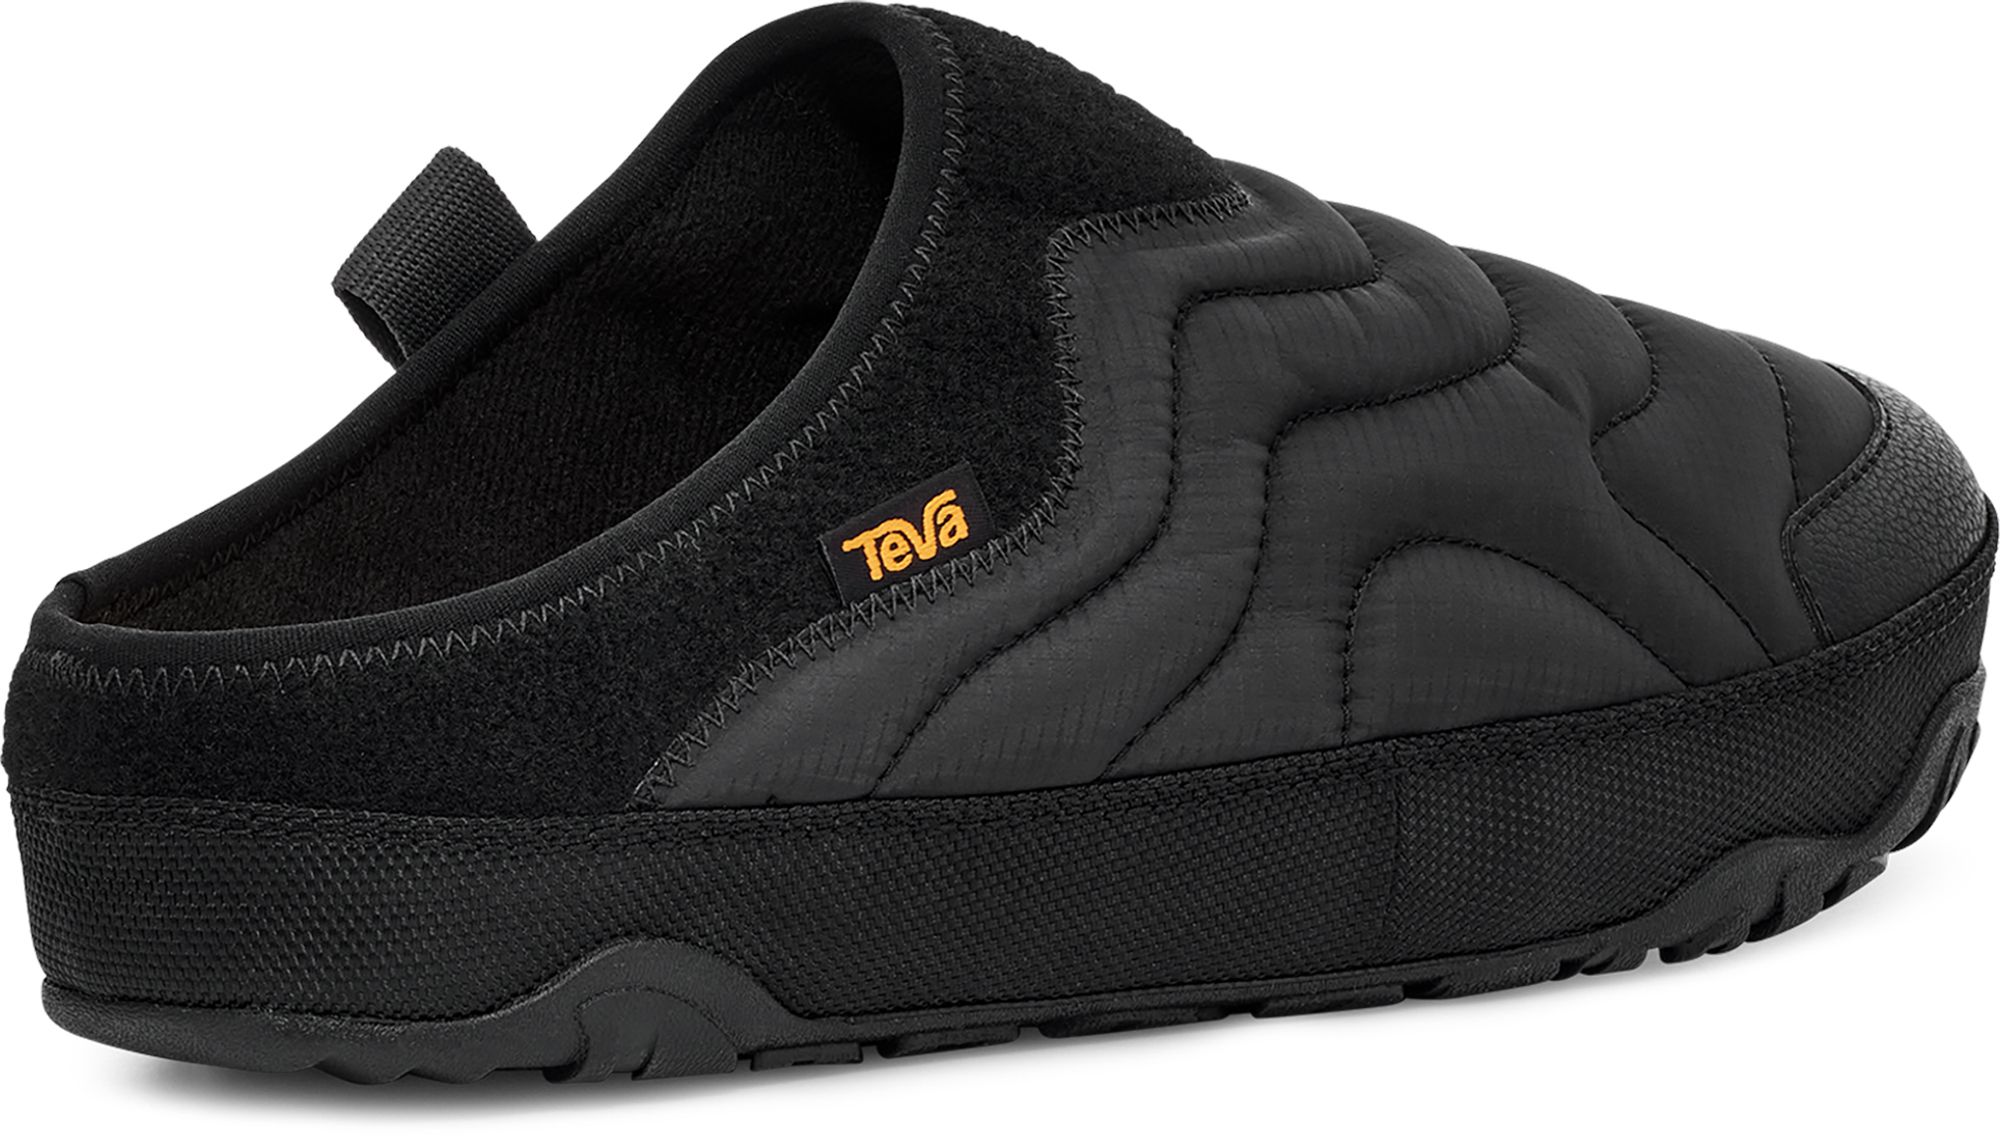 Teva Men's ReEMBER Terrain Slip-On Shoes